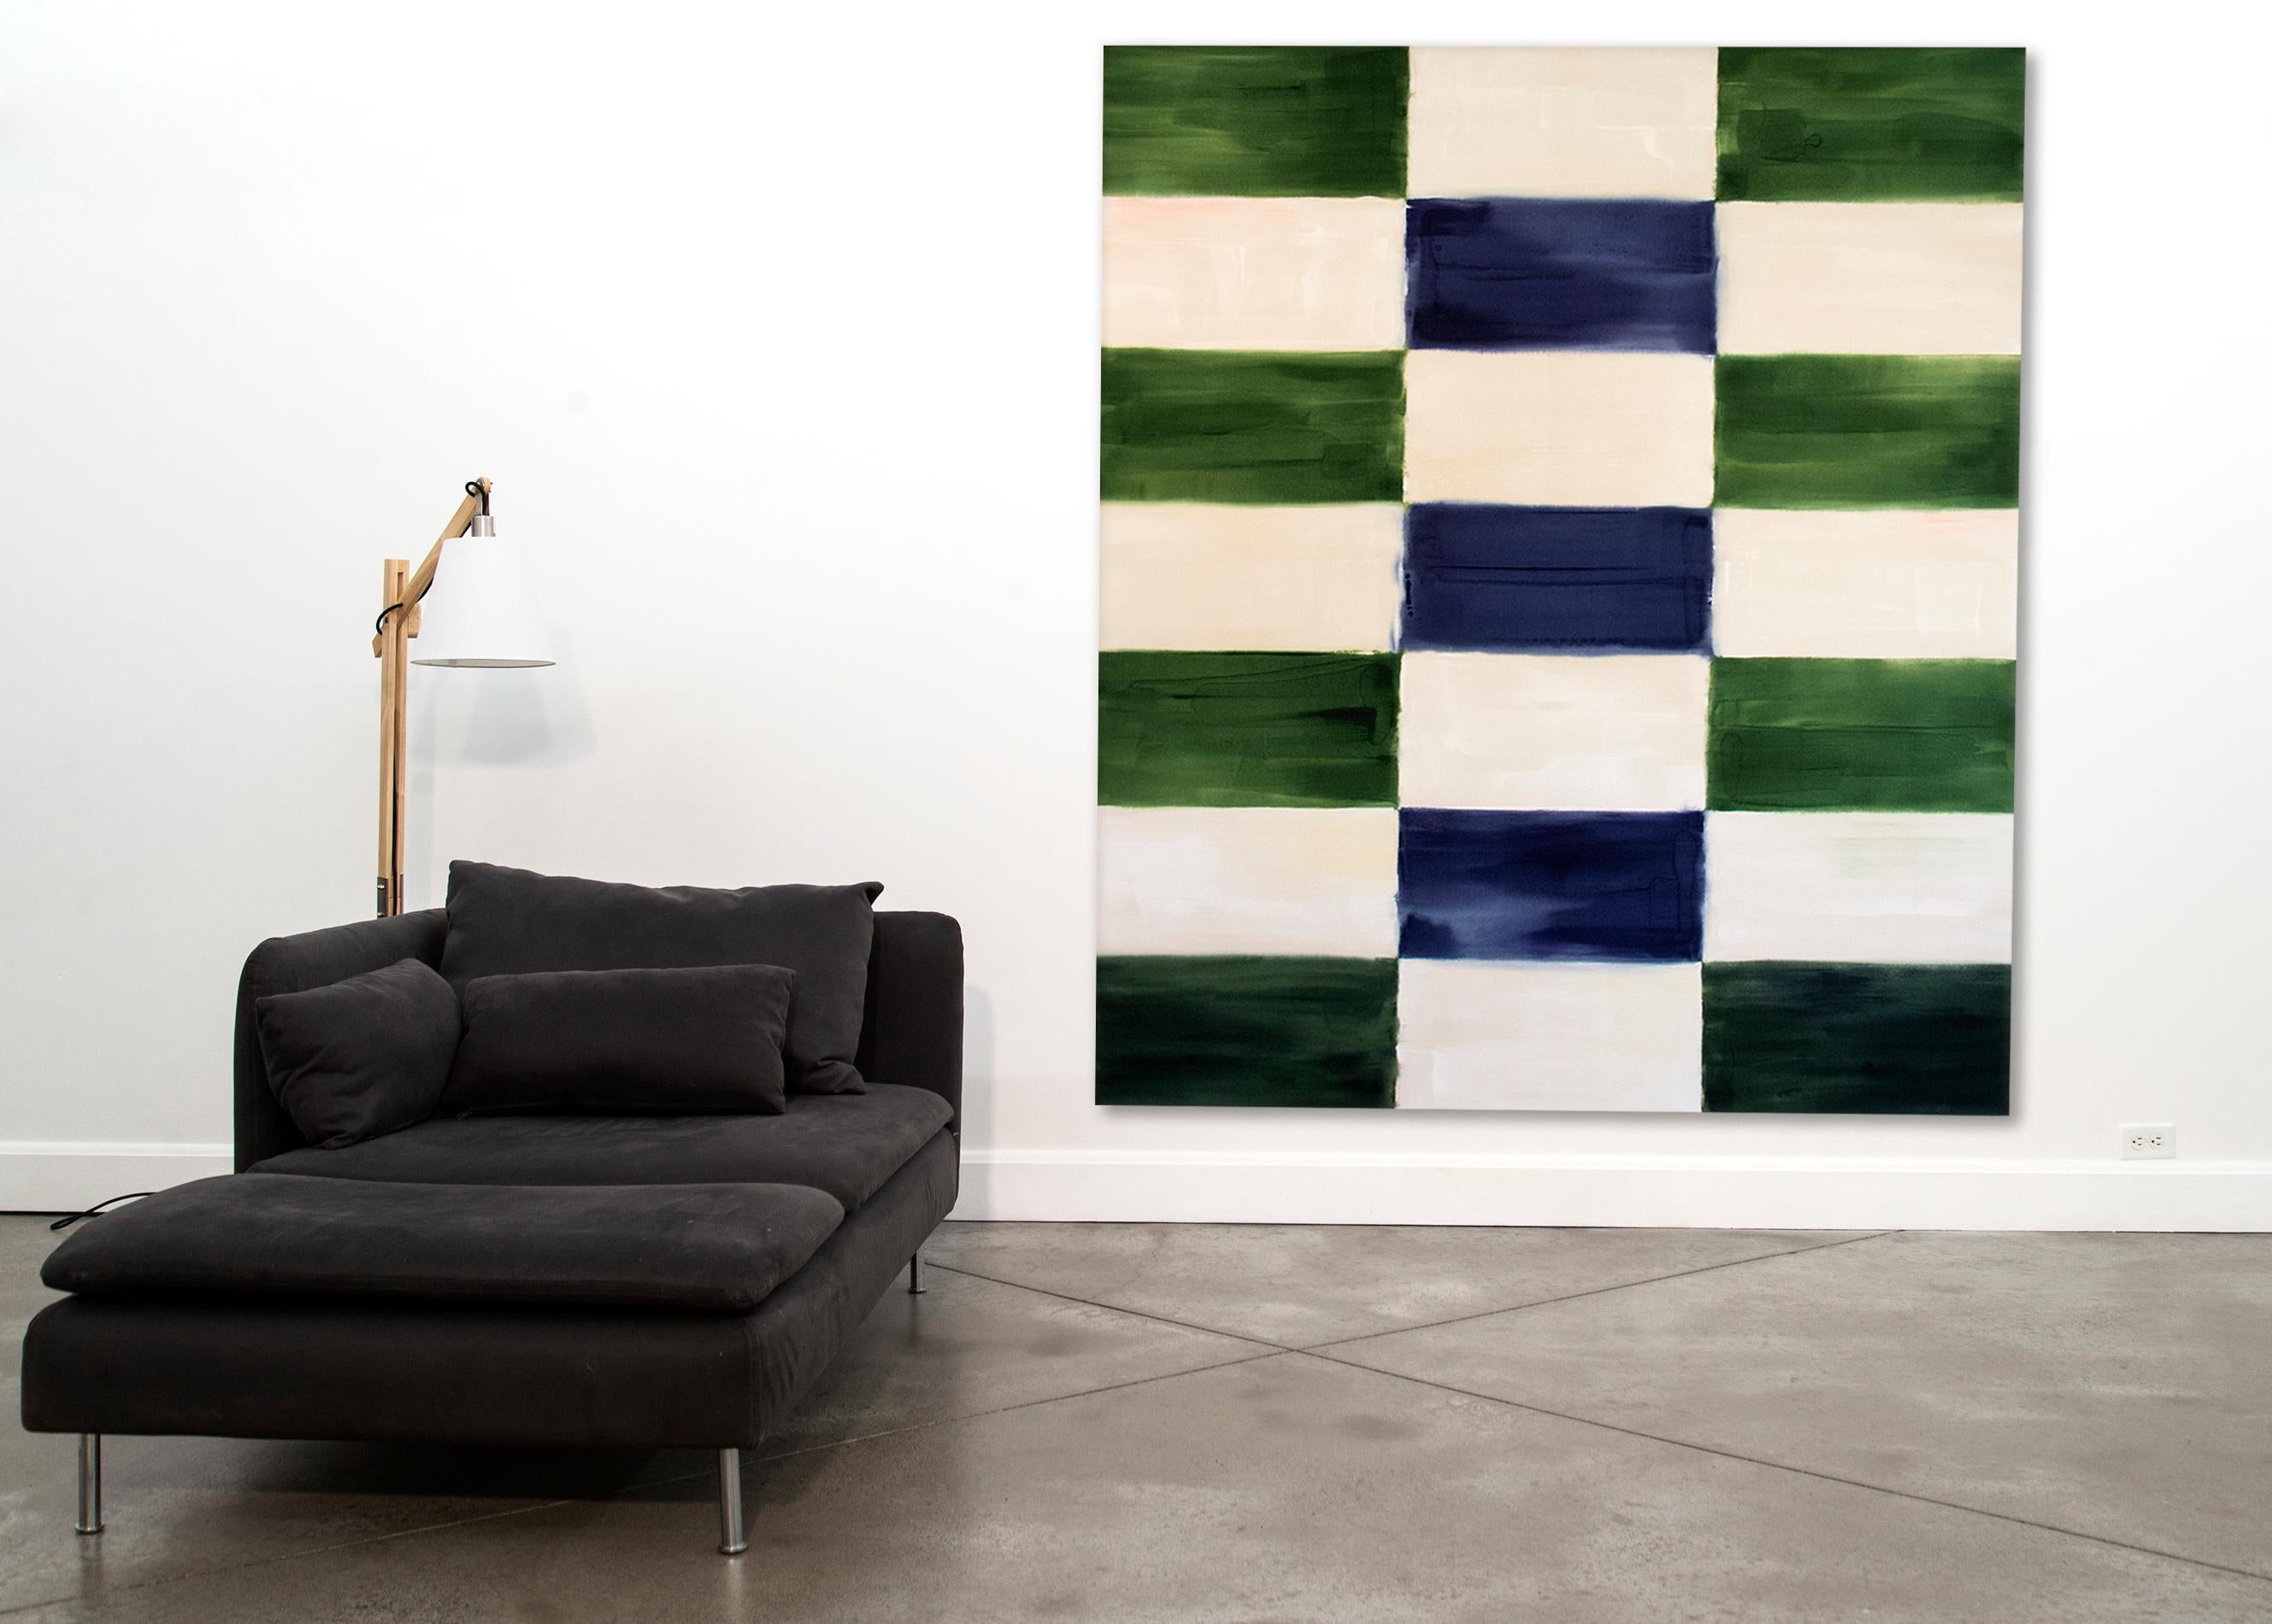 Deux colonnes de rectangles horizontaux aux couleurs alternées de vert forêt et de blanc chaud encadrent une troisième colonne centrale de rectangles blanc chaud et bleu saphir dans cette toile de 2,5 mètres de haut. Les bords des rectangles en